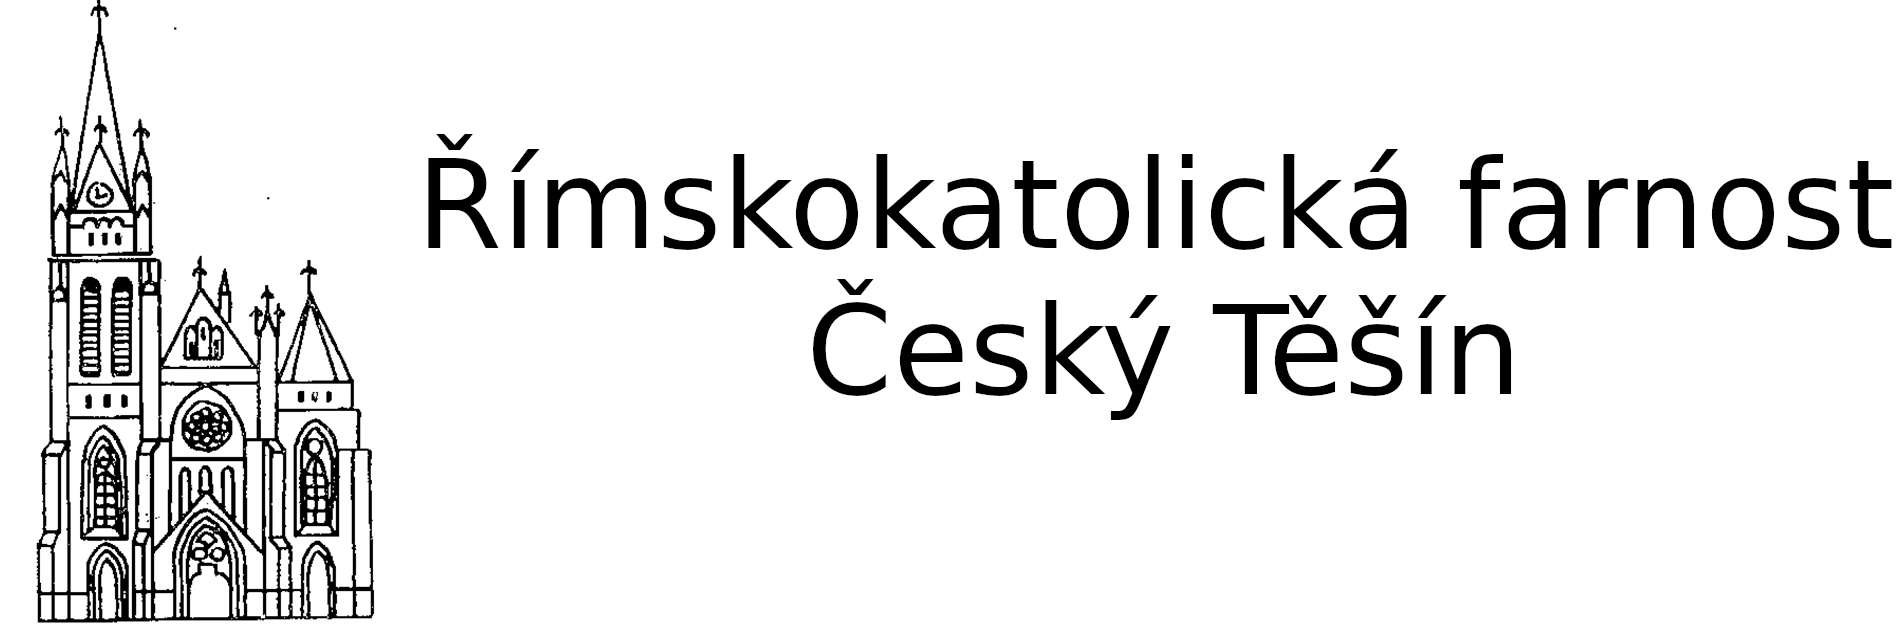 Logo Broučci - Římskokatolická farnost Český Těšín